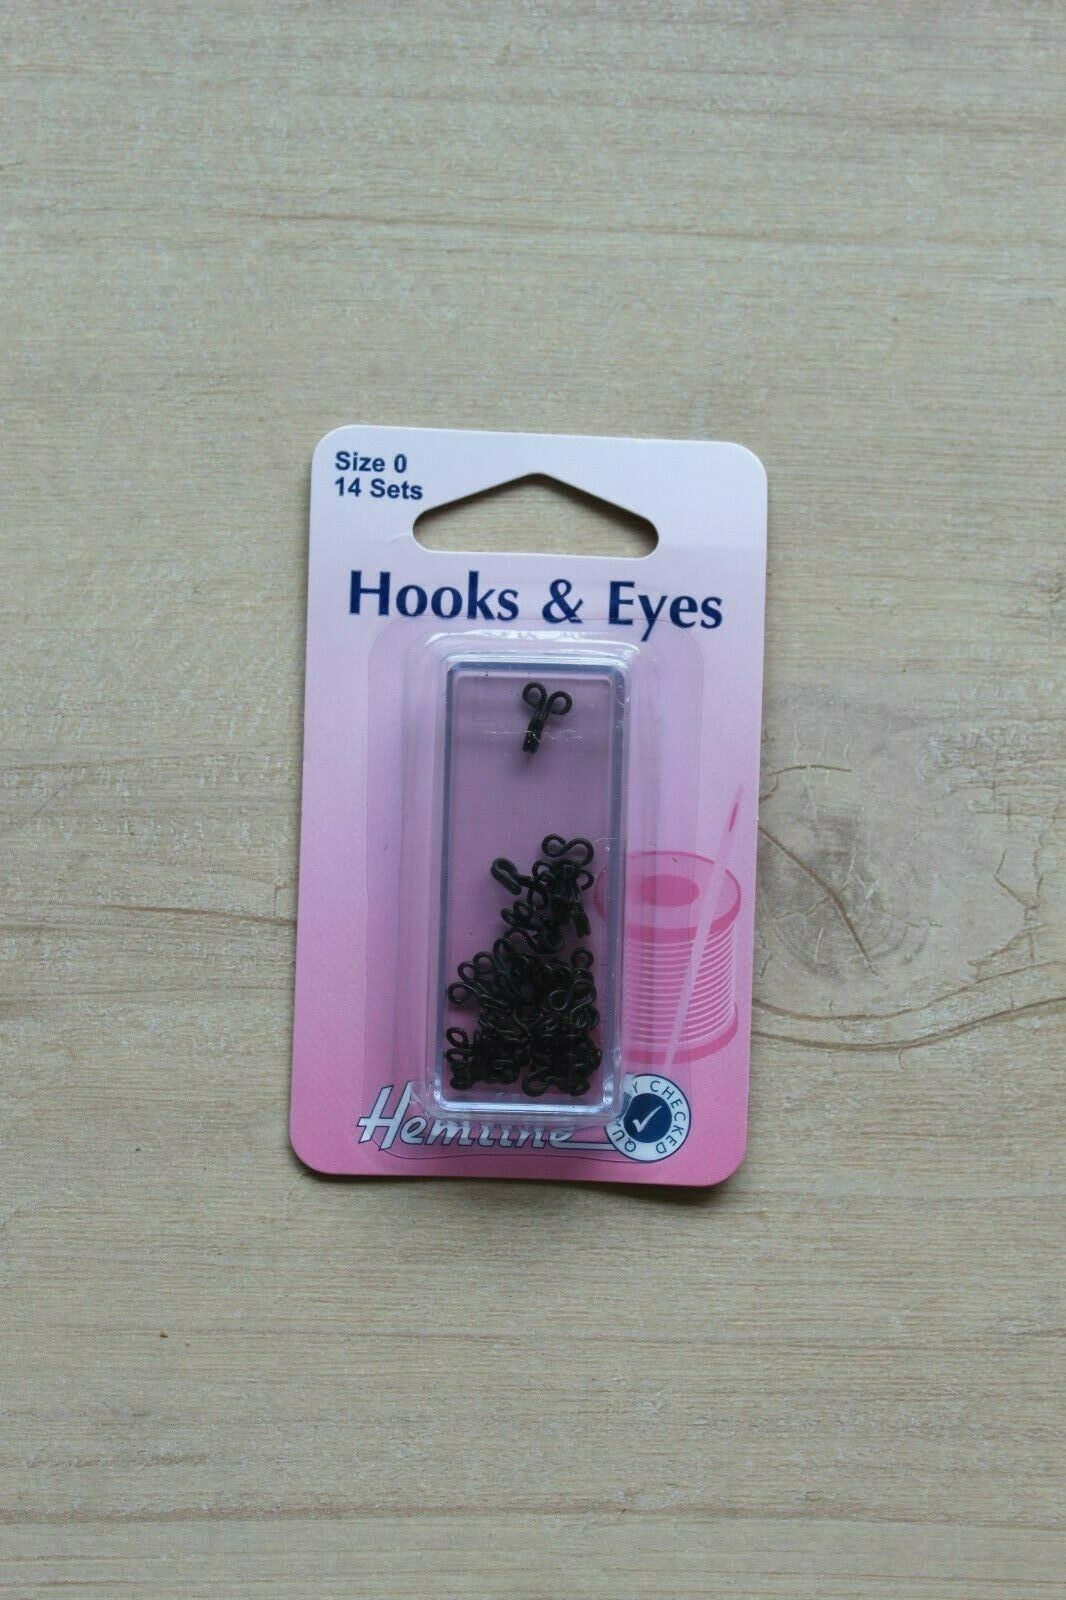 Hemline size 0 hooks and eyes - Black